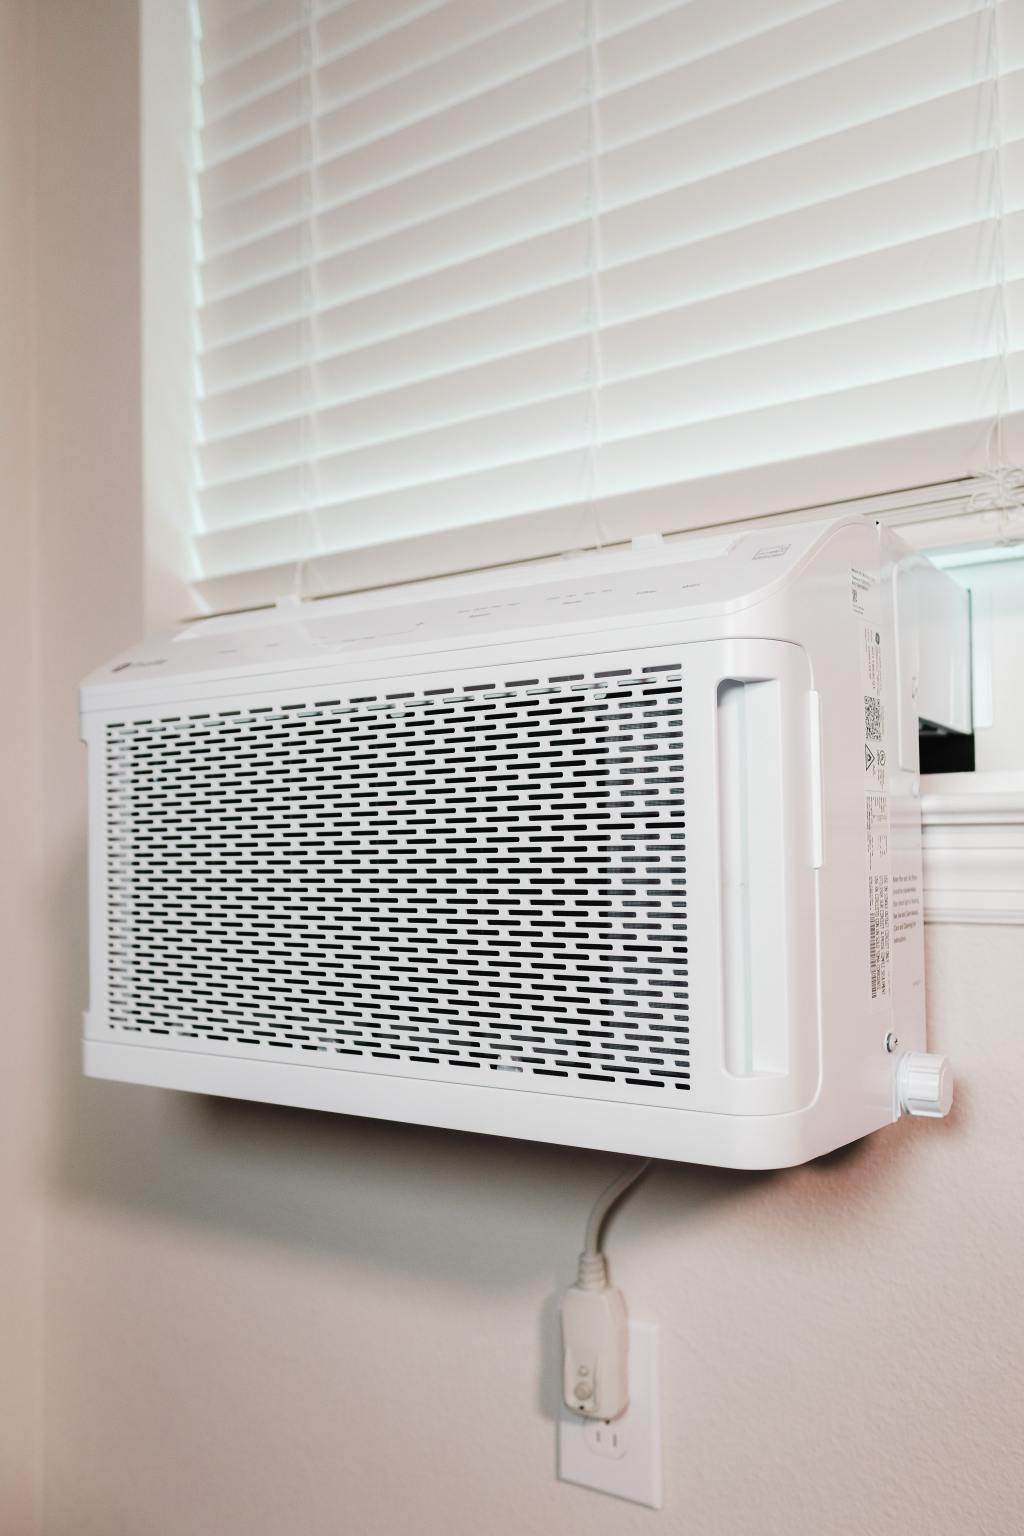 Air conditioner invention bookosmia blog